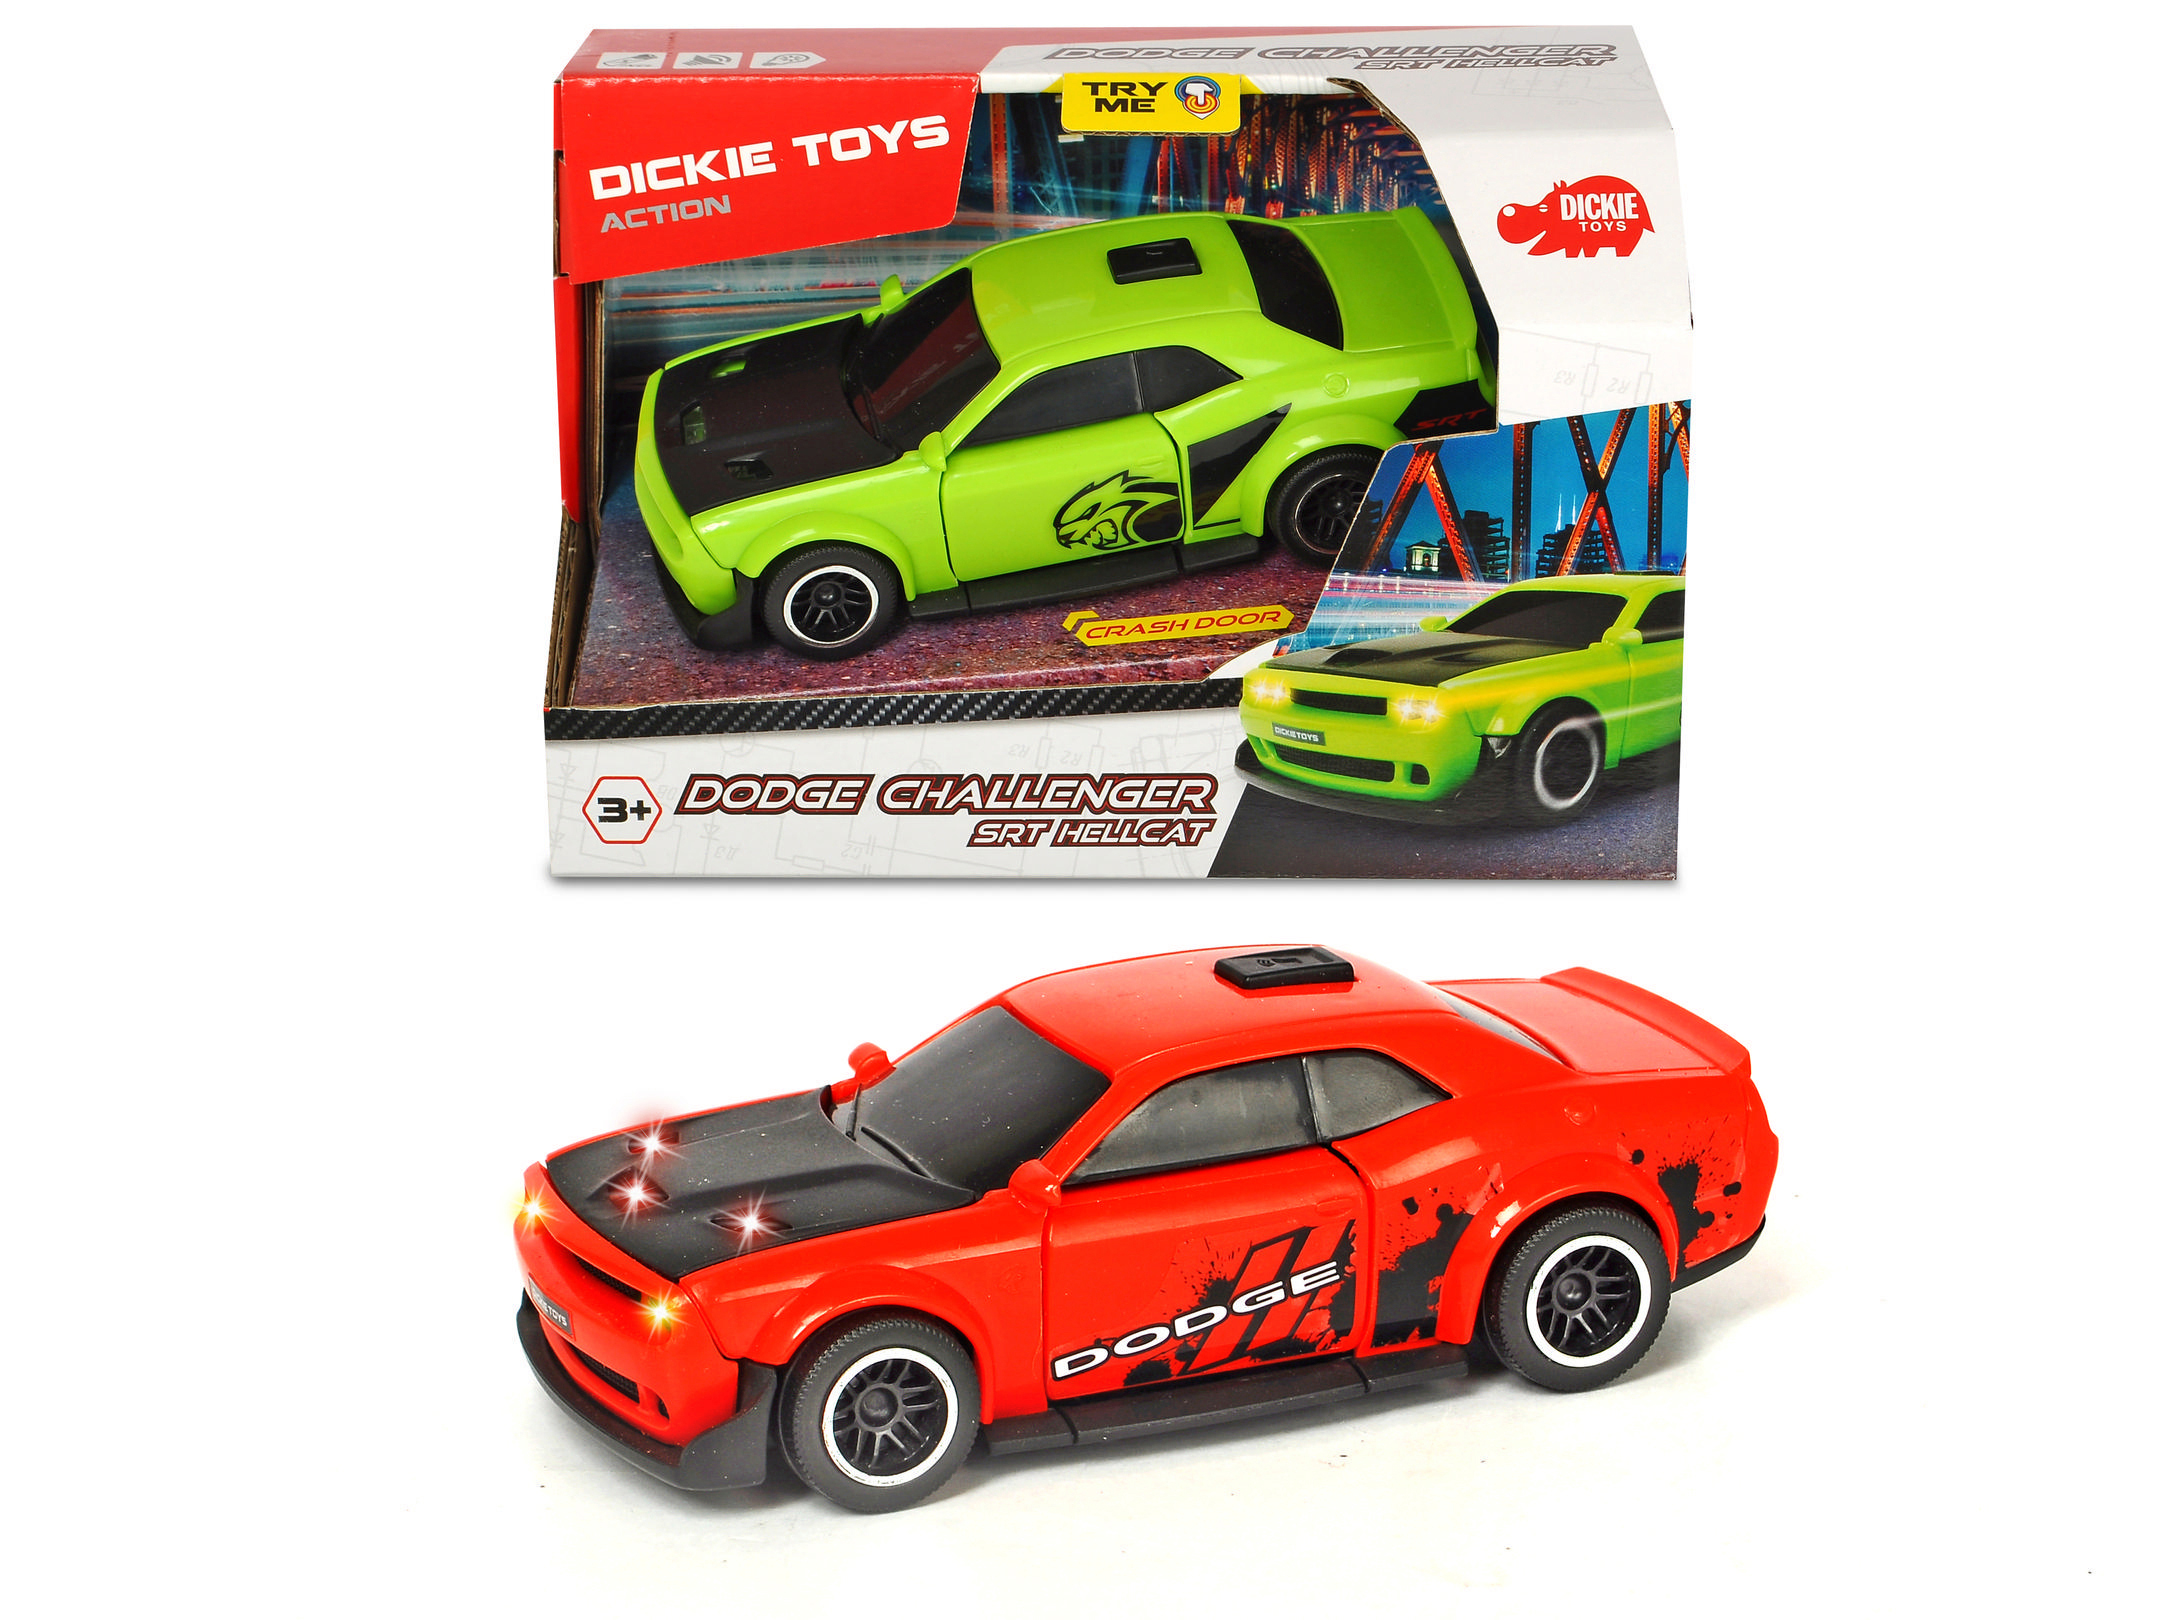 DICKIE-TOYS Dodge Spielzeugauto mit SRT Spielzeugauto Hellcat, Freilauf, Rot/Grün sortiert 2-fach Challenger